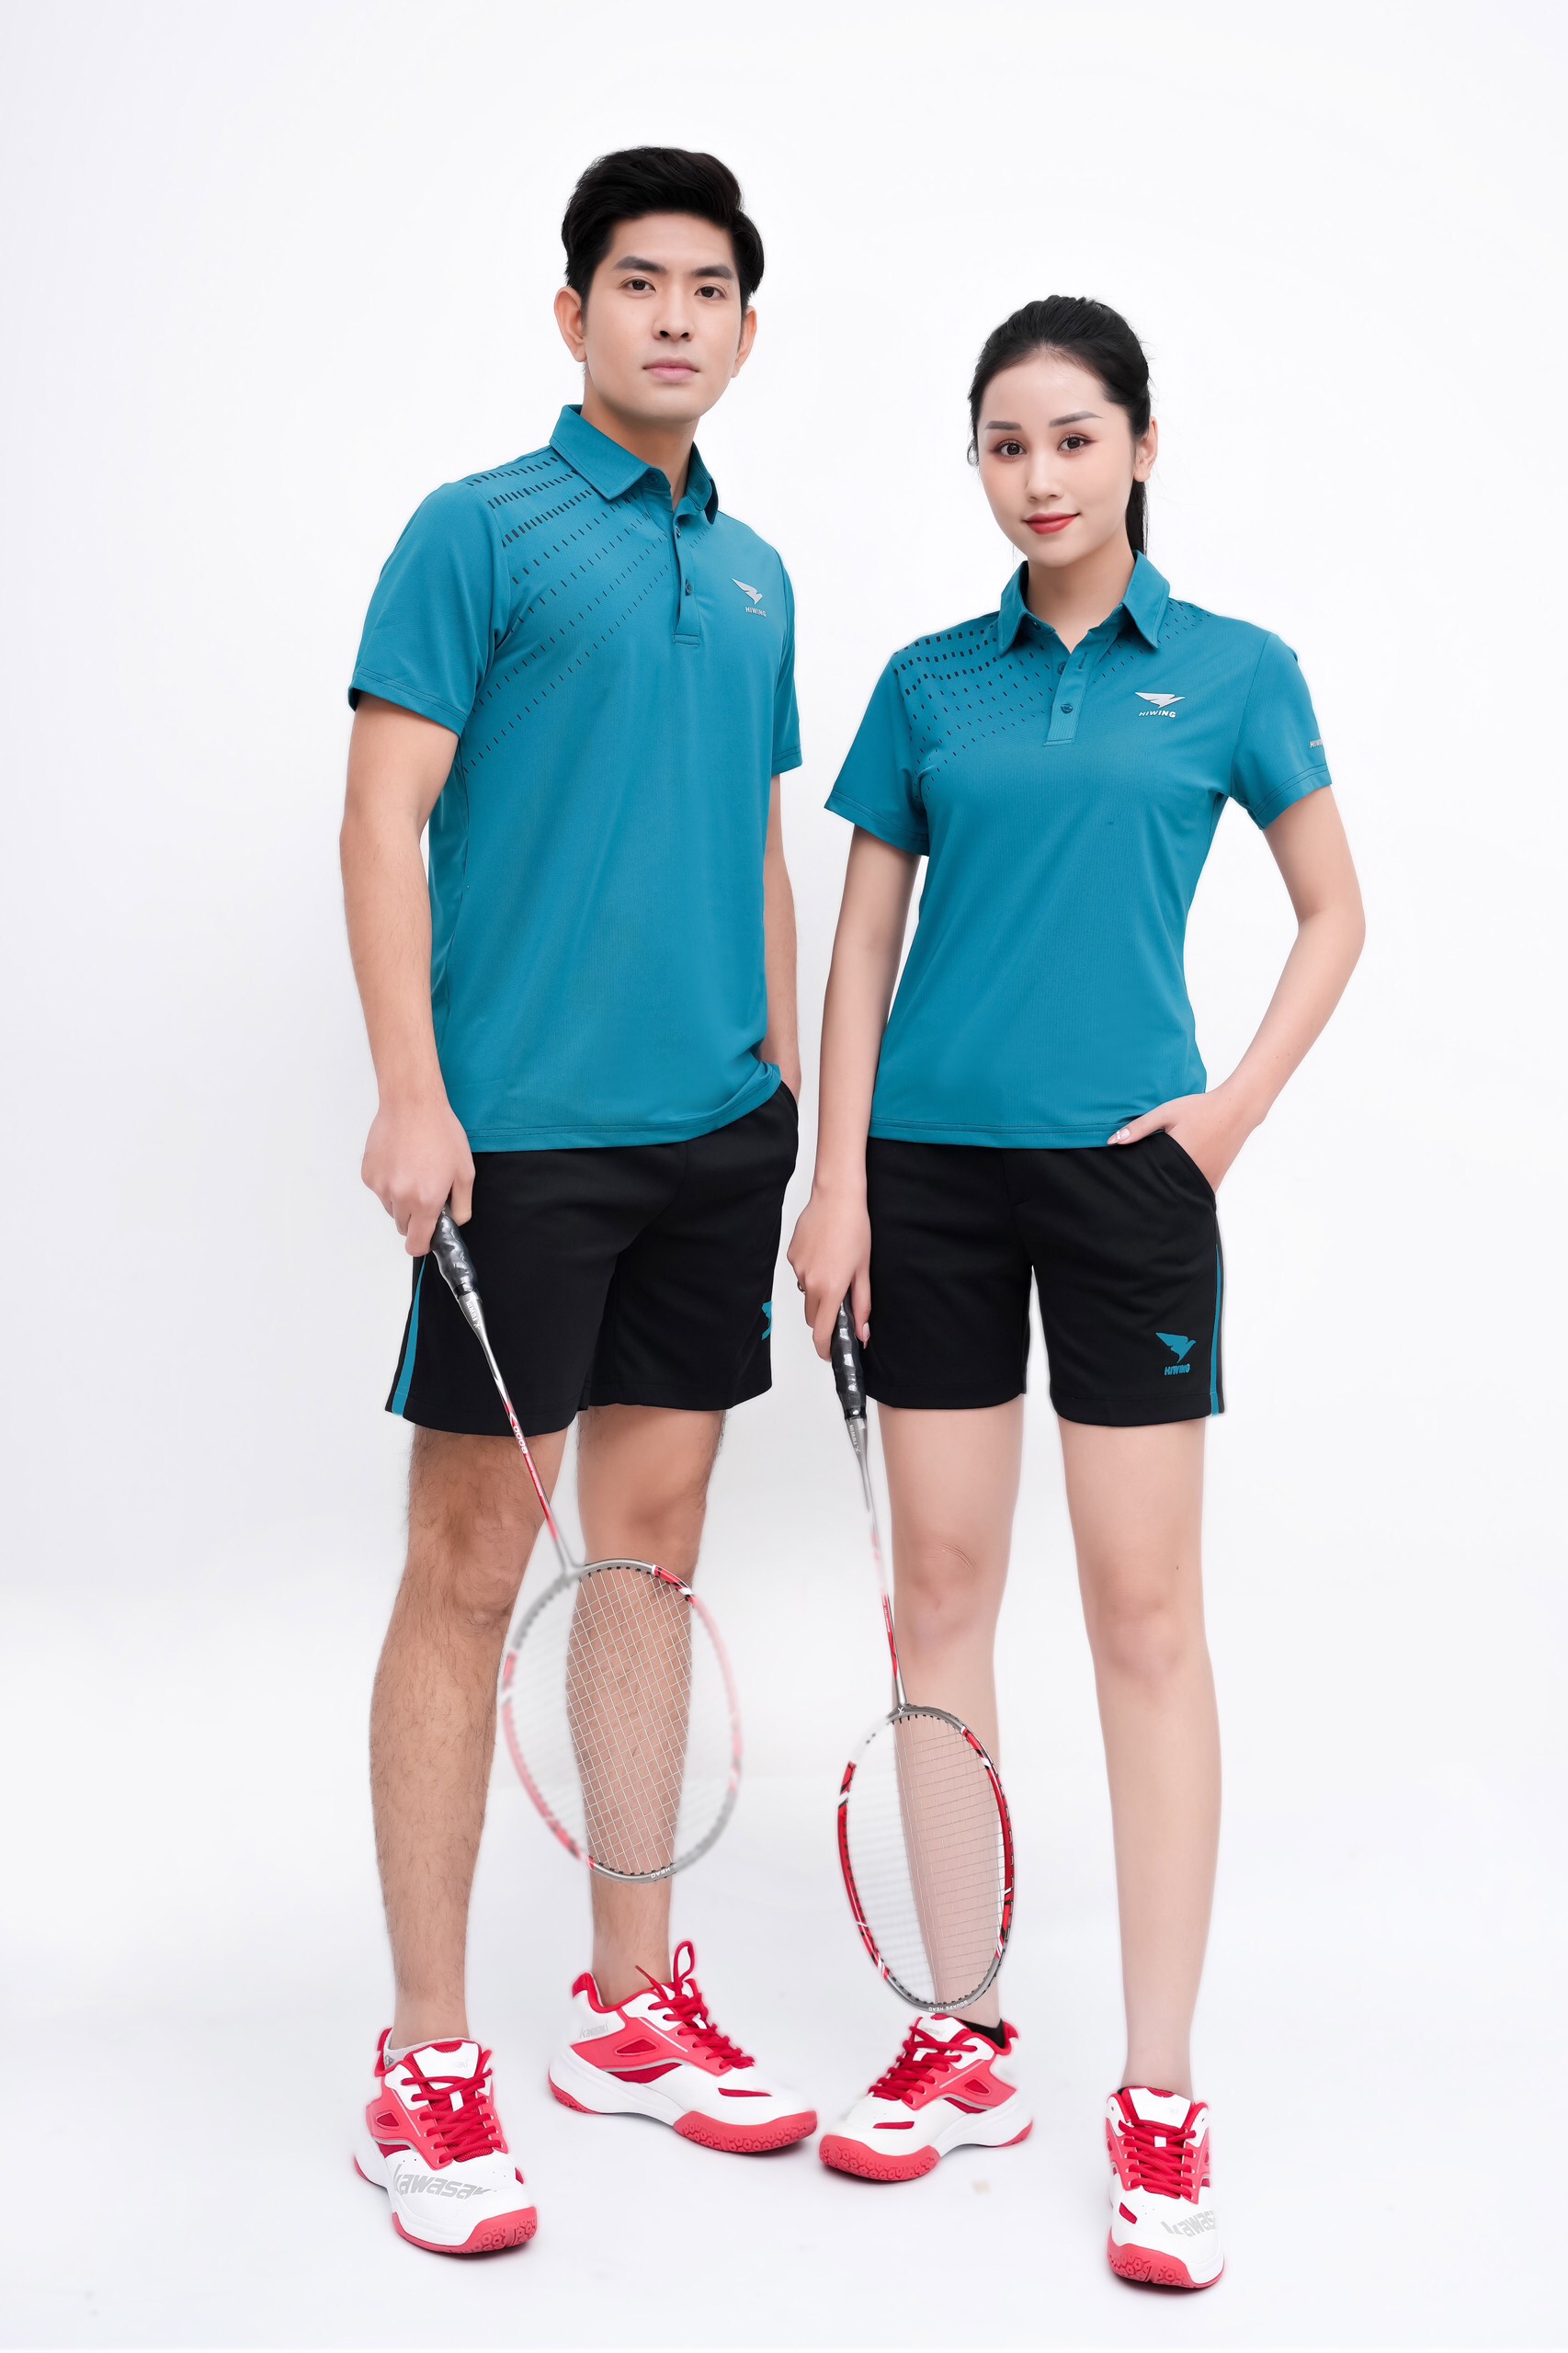 Áo thể thao Polo Nam Hiwing Lux 3 màu Xanh Lý